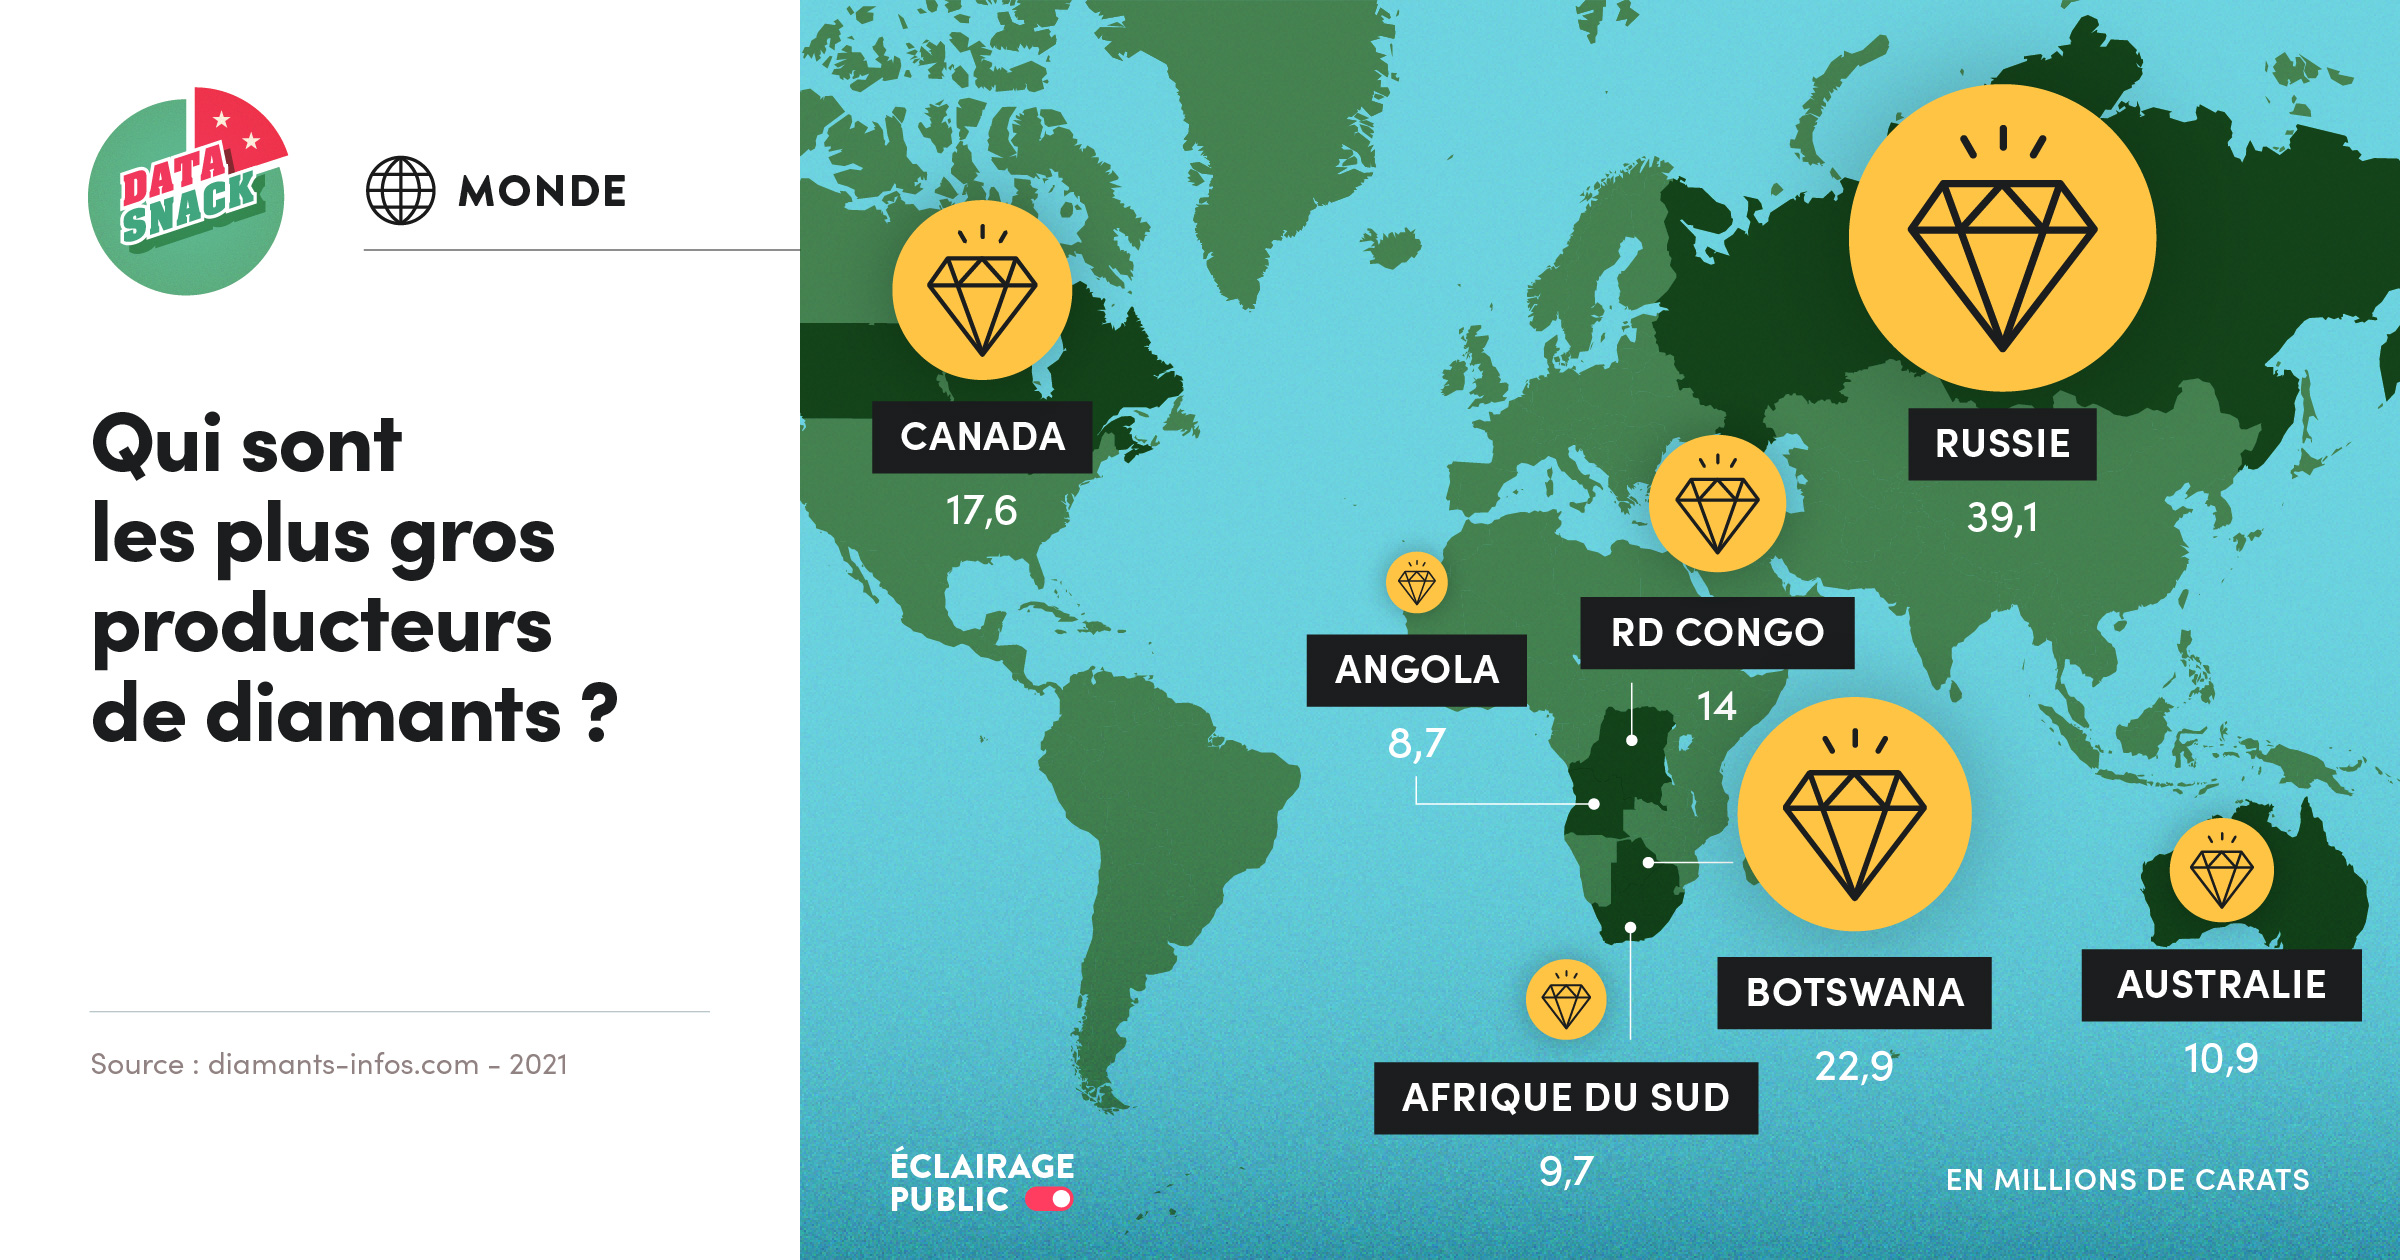 Data visualisation des principaux pays producteurs de diamants dans le monde (Russie, Canada, Botswana, Afrique du Sud, Angola, RD Congo, Australie). © Infographie ÉCLAIRAGE PUBLIC